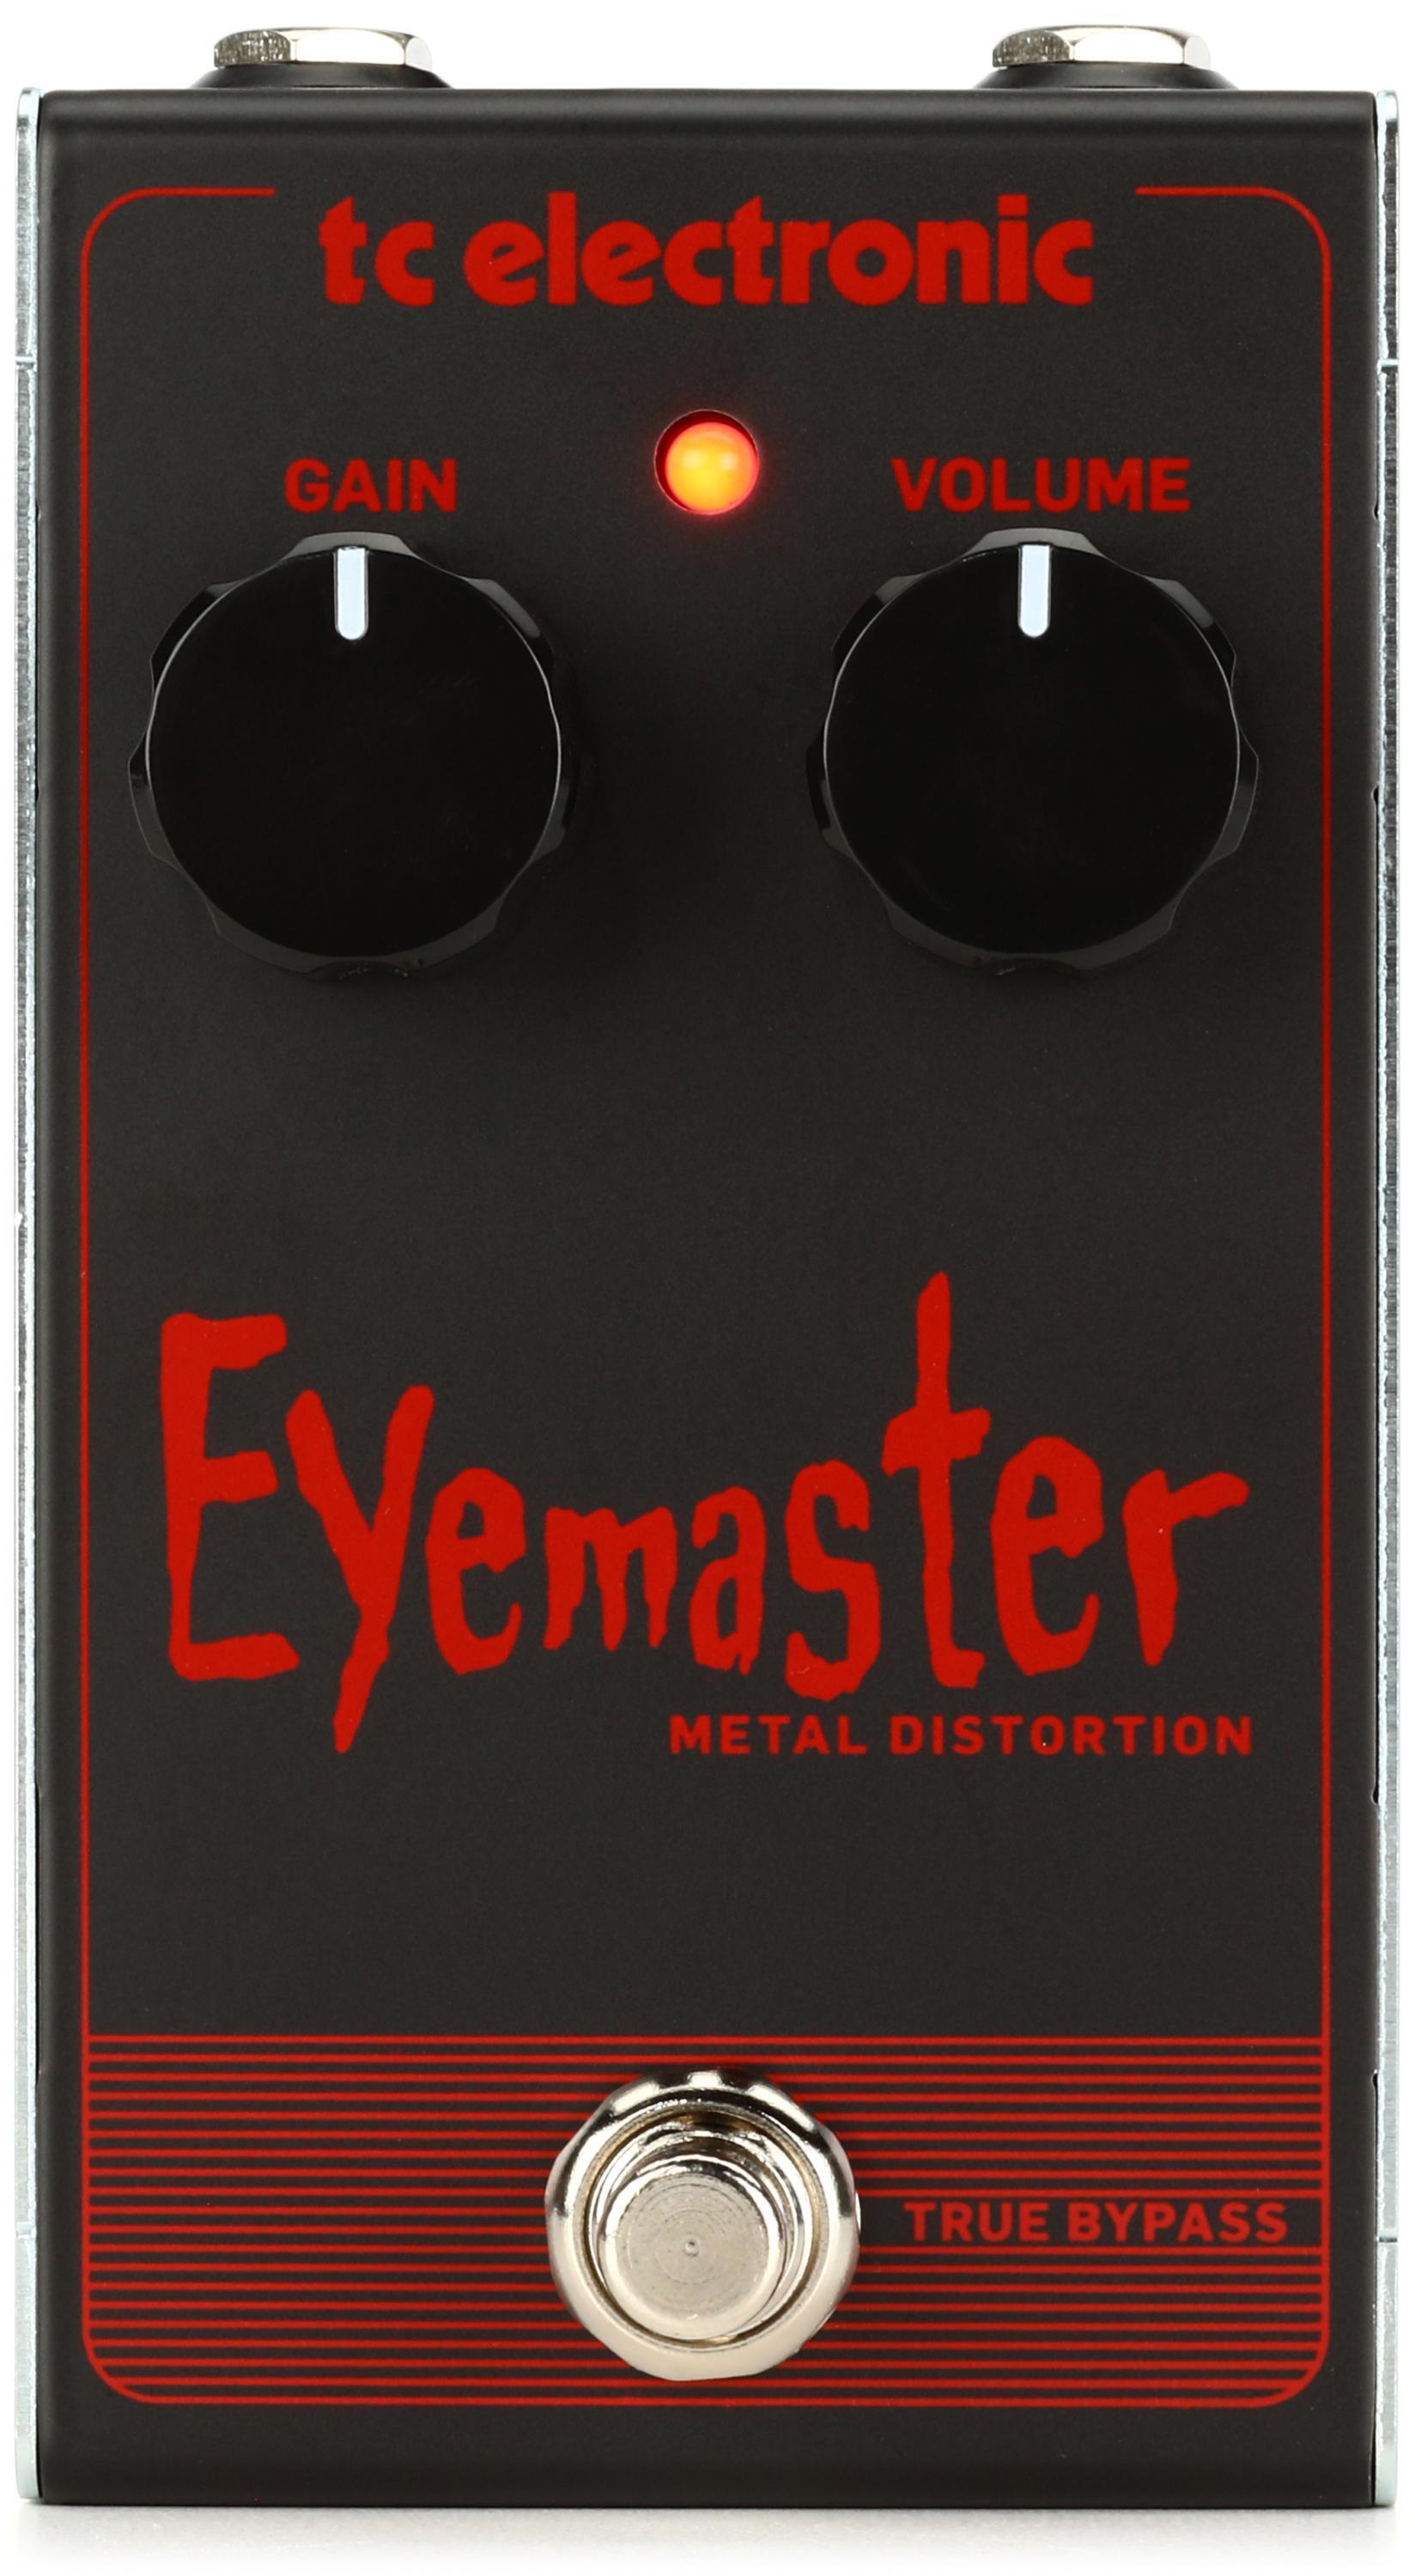 Bundled Item: TC Electronic Eyemaster Metal Distortion Pedal